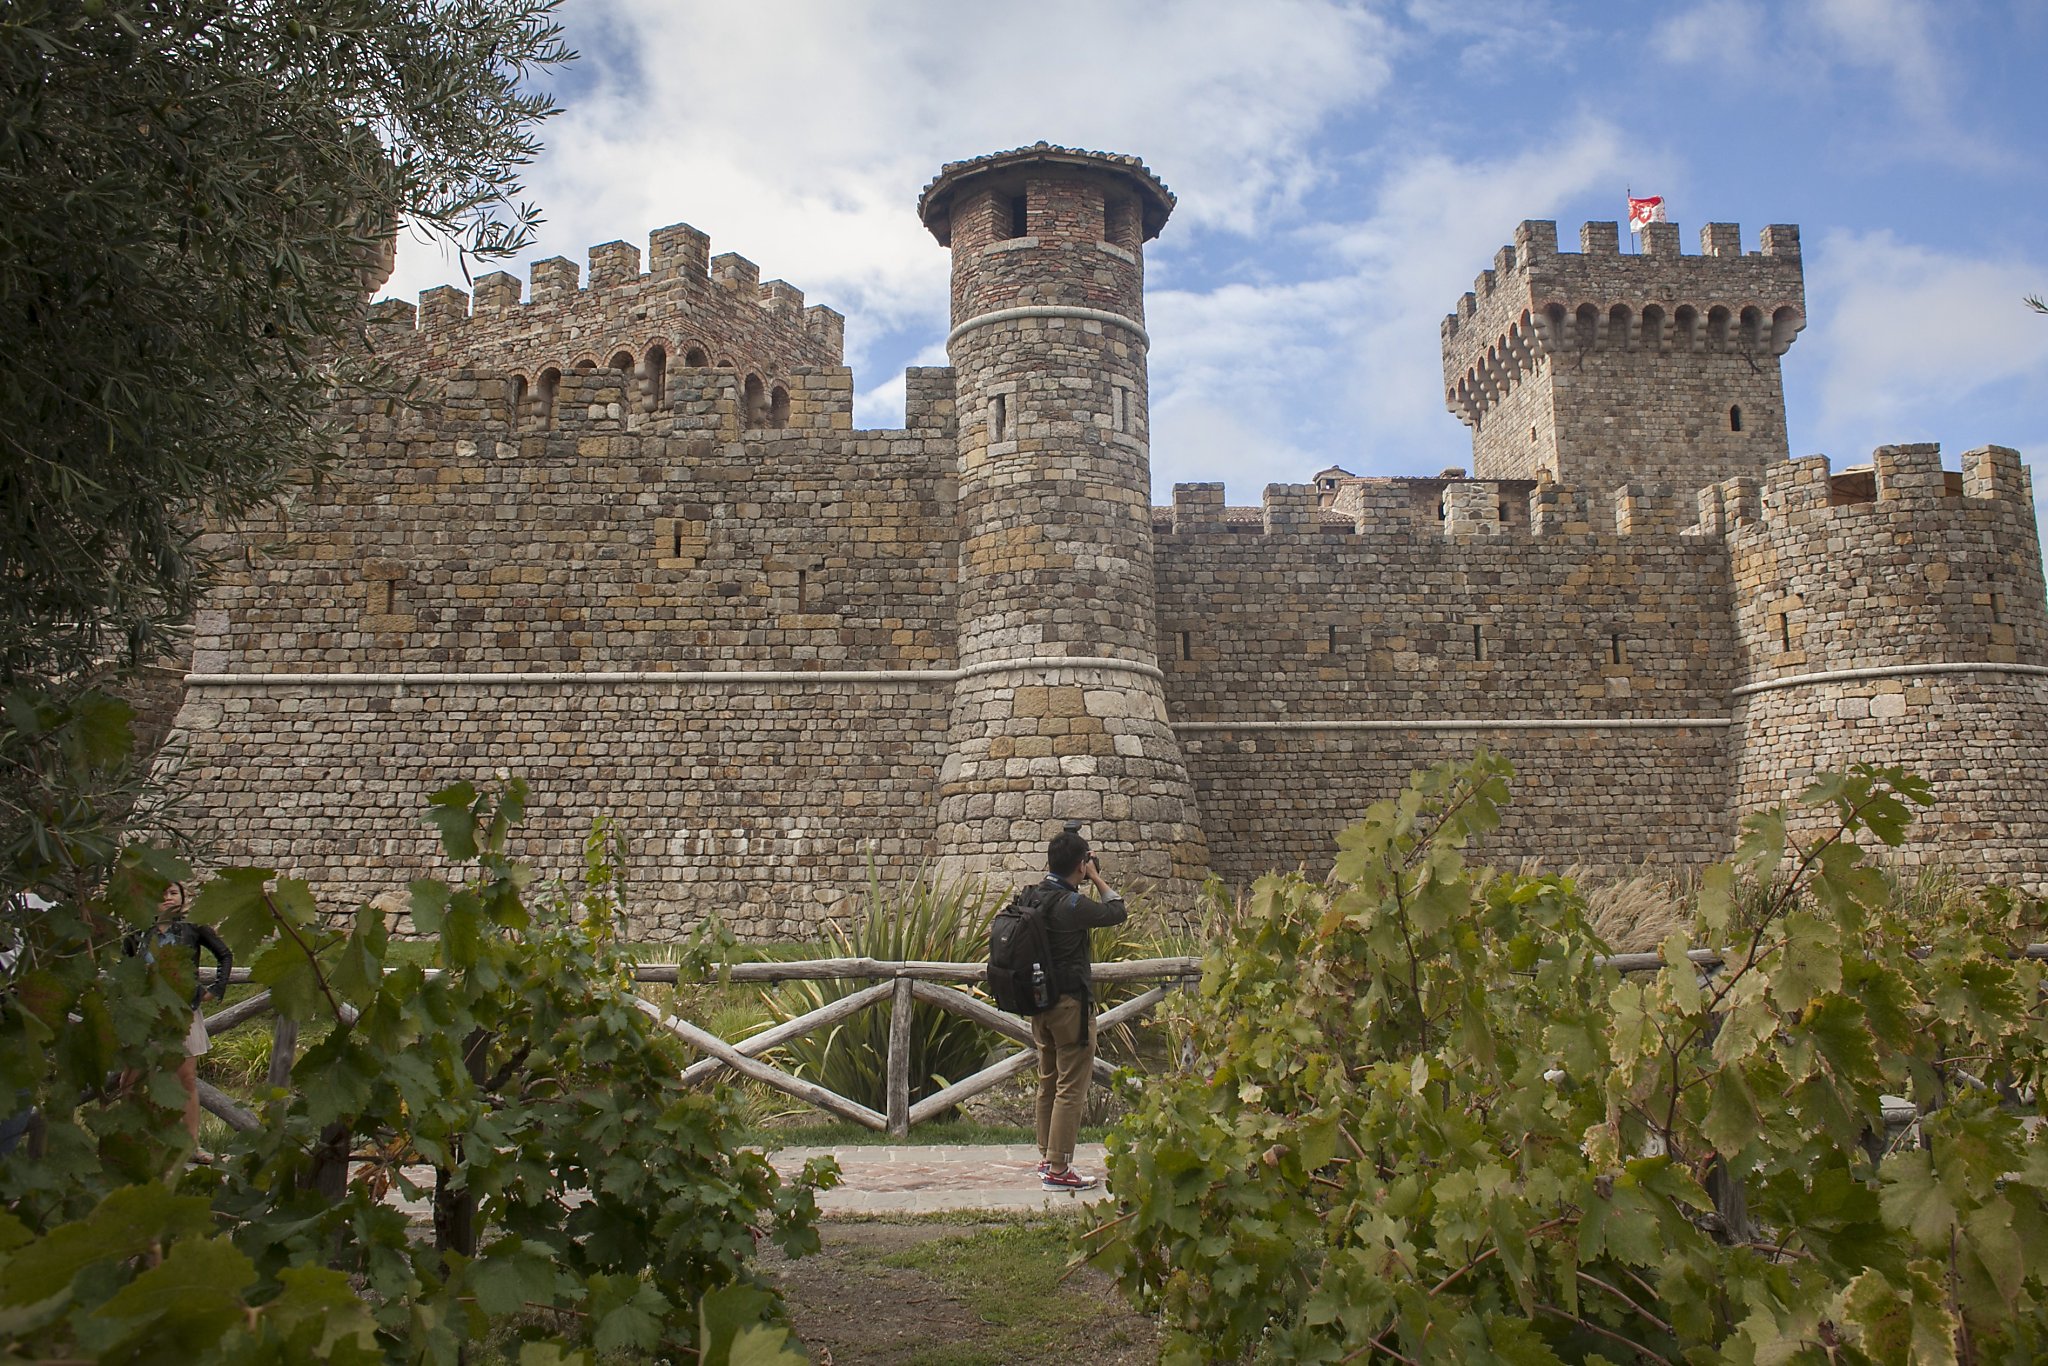 Castello di Amorosa wine train excursion fit for a king - SFGate